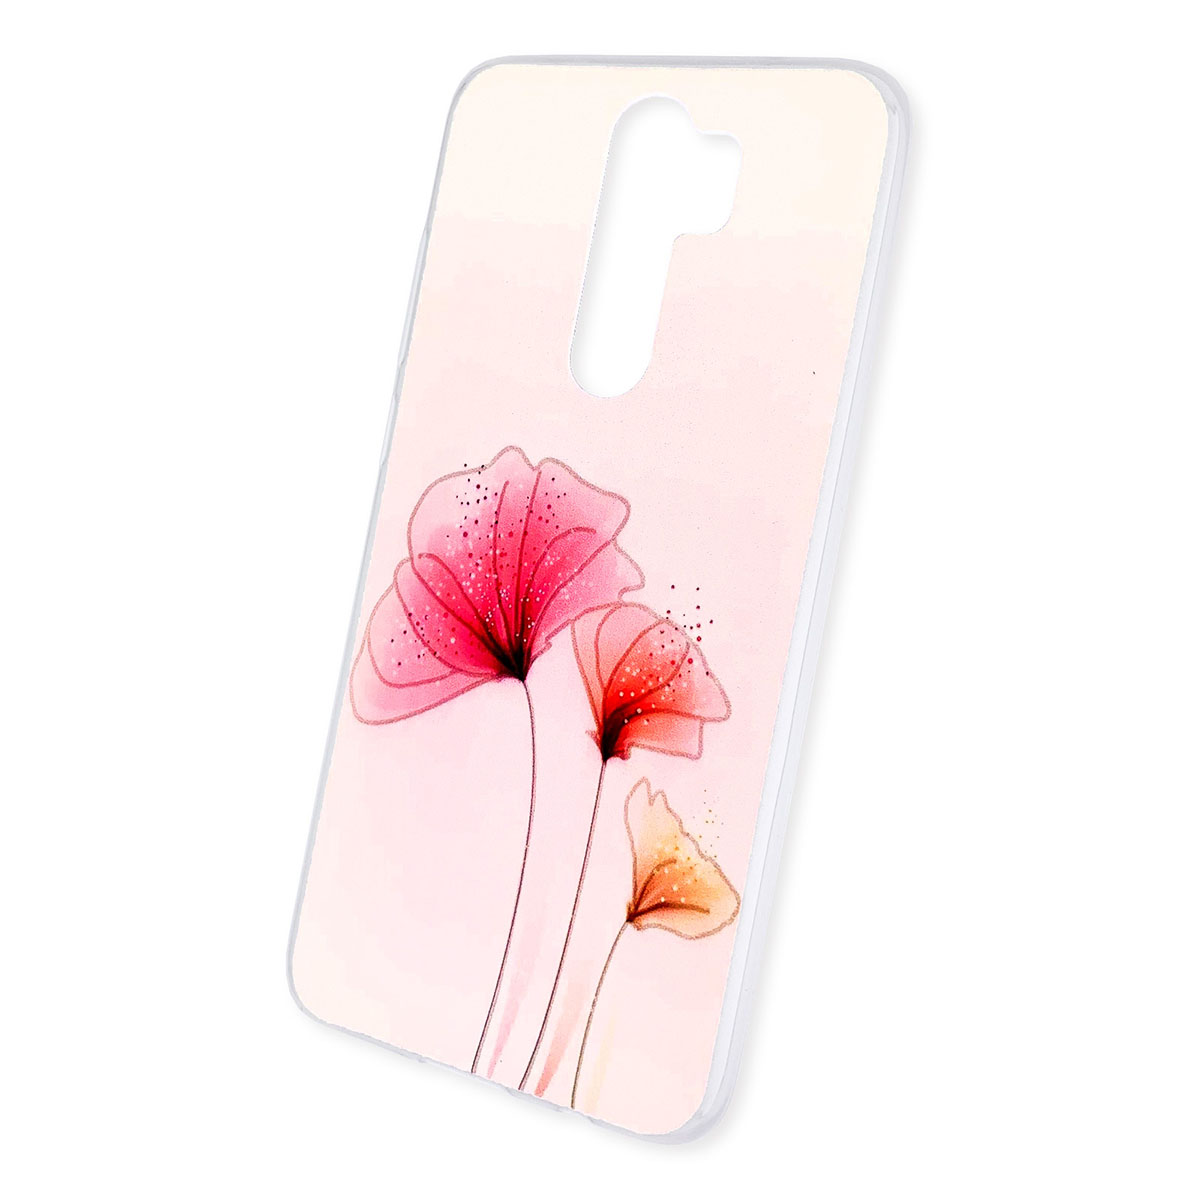 Чехол накладка для XIAOMI Redmi Note 8 Pro, силикон, рисунок цветы.